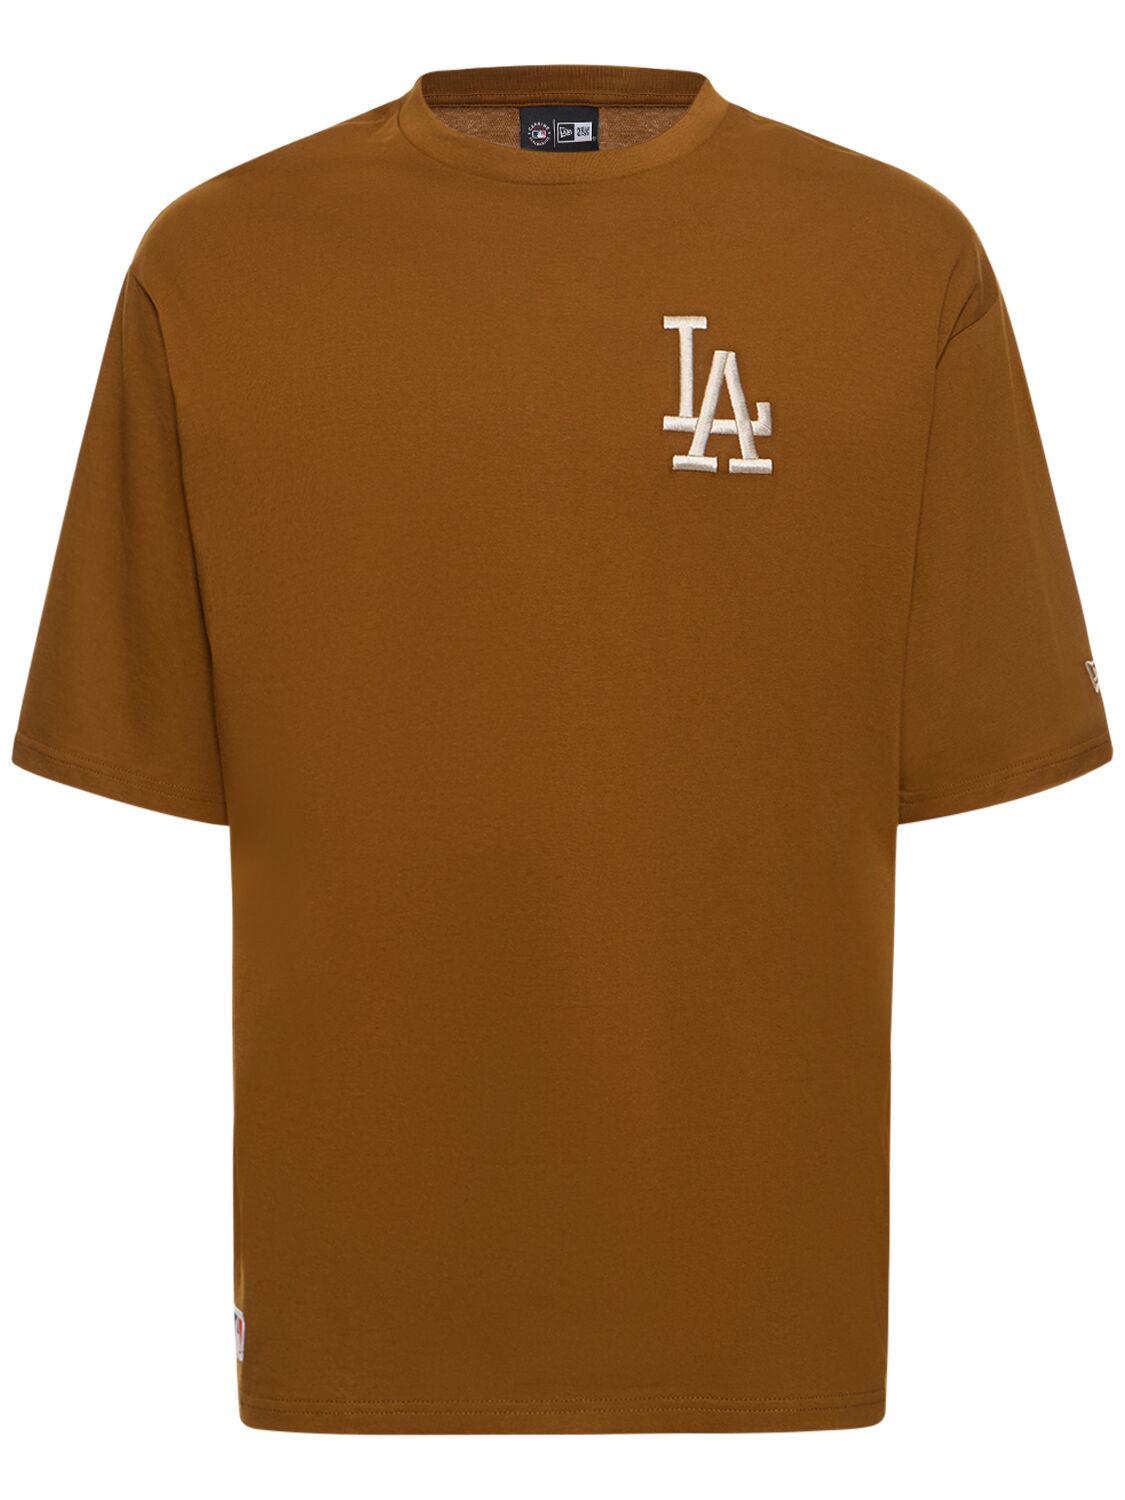 New Era La Dodgers League Essentials T-shirt In Brown